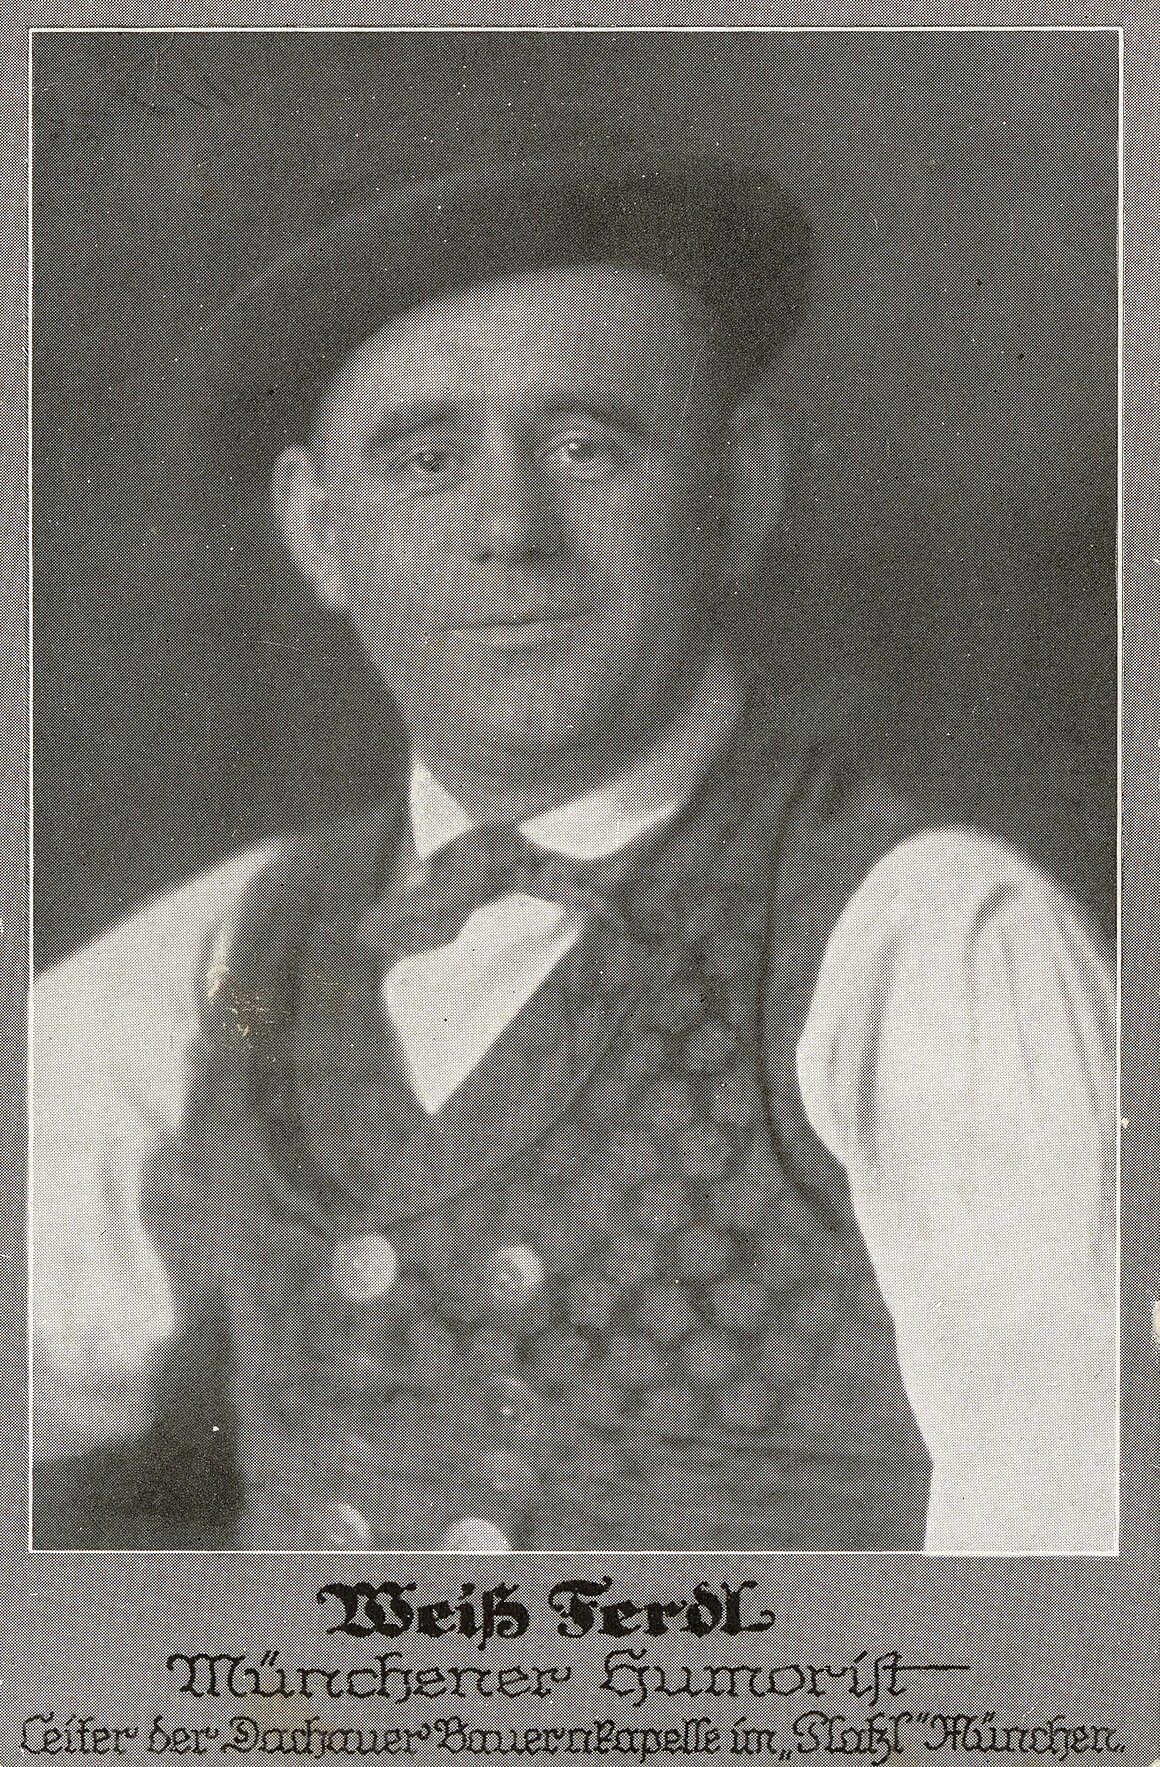 Weiß Ferdl, Münchner Humorist, ca. 1925